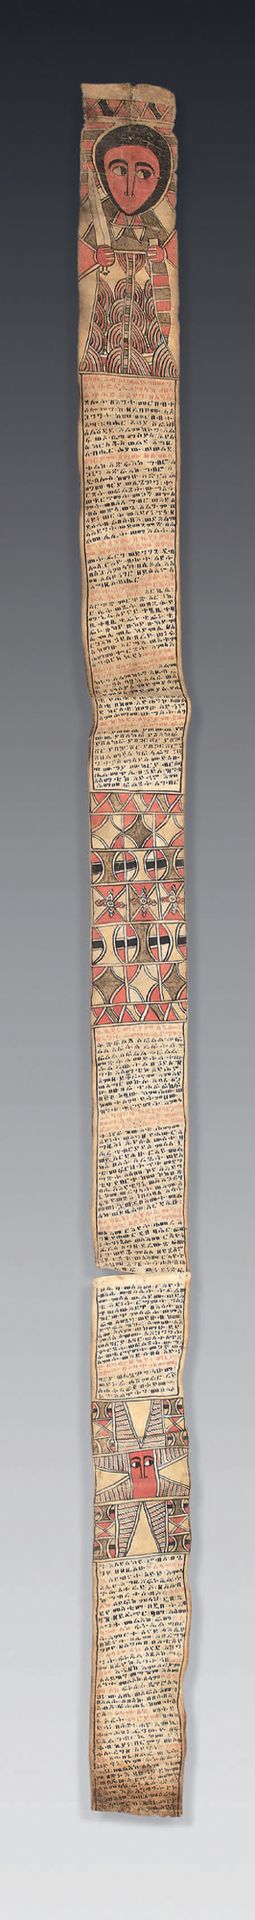 Null Rotolo talismano etiope
Pigmenti policromi su carta.
Etiopia, popolo Amhara&hellip;